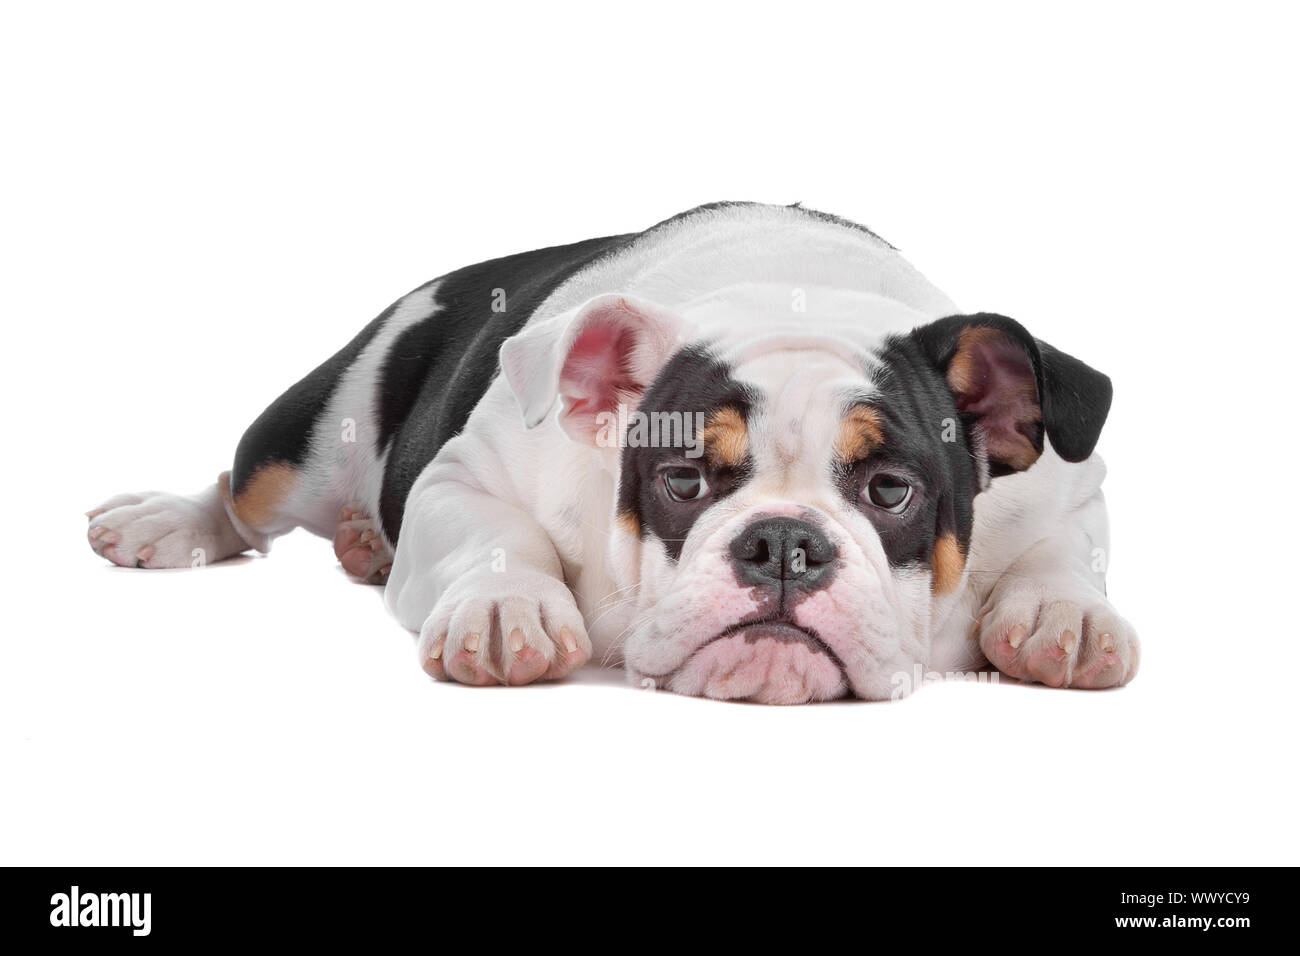 English bulldog lying, isolated on a white background Stock Photo